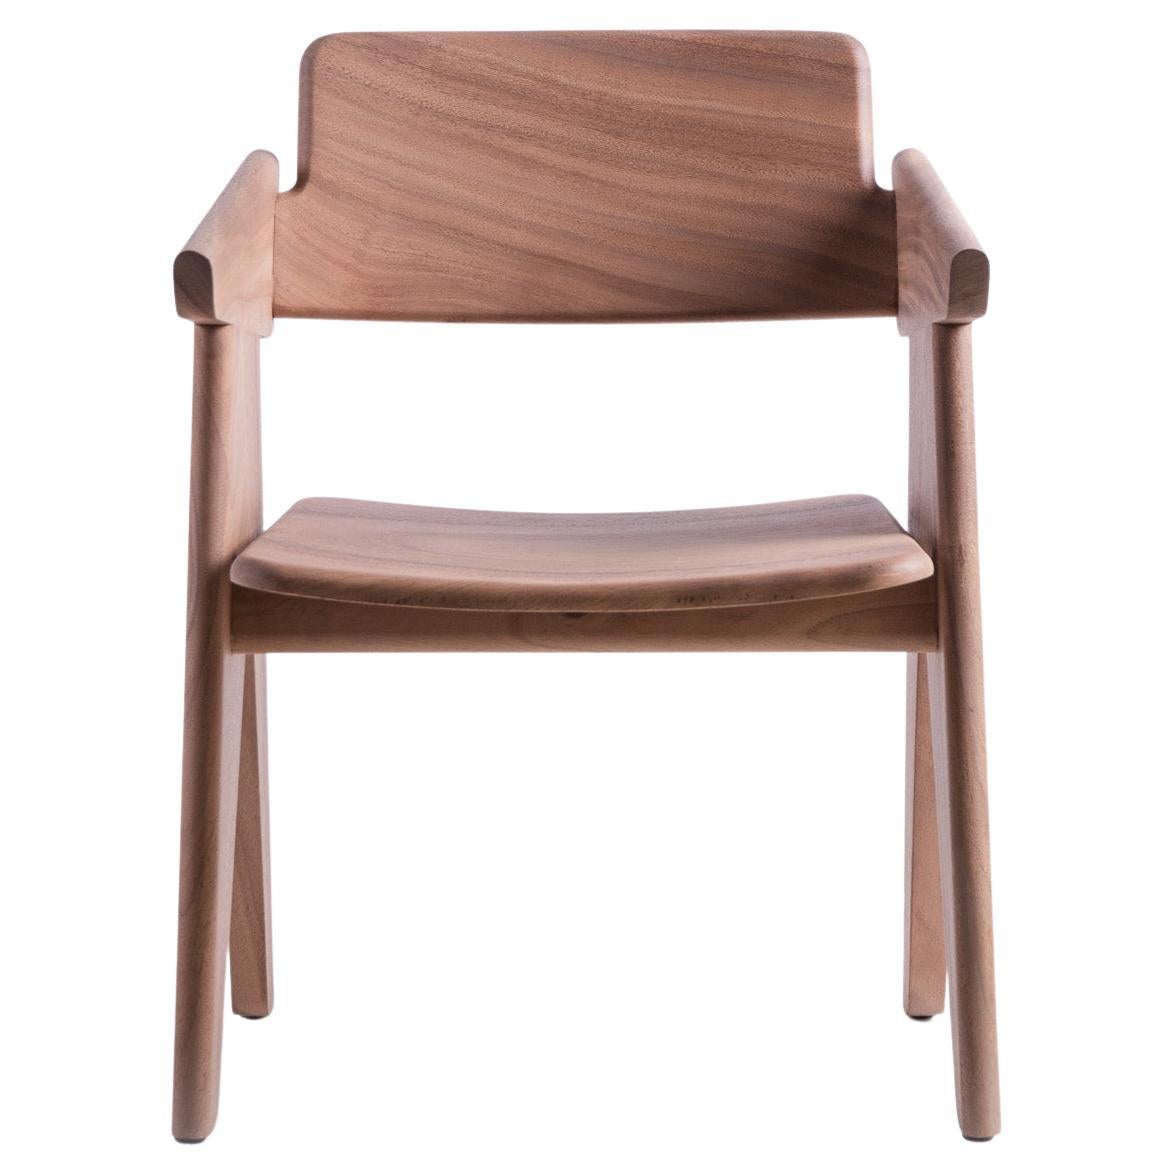 Kena Chair, Natural Light Acacia Wood